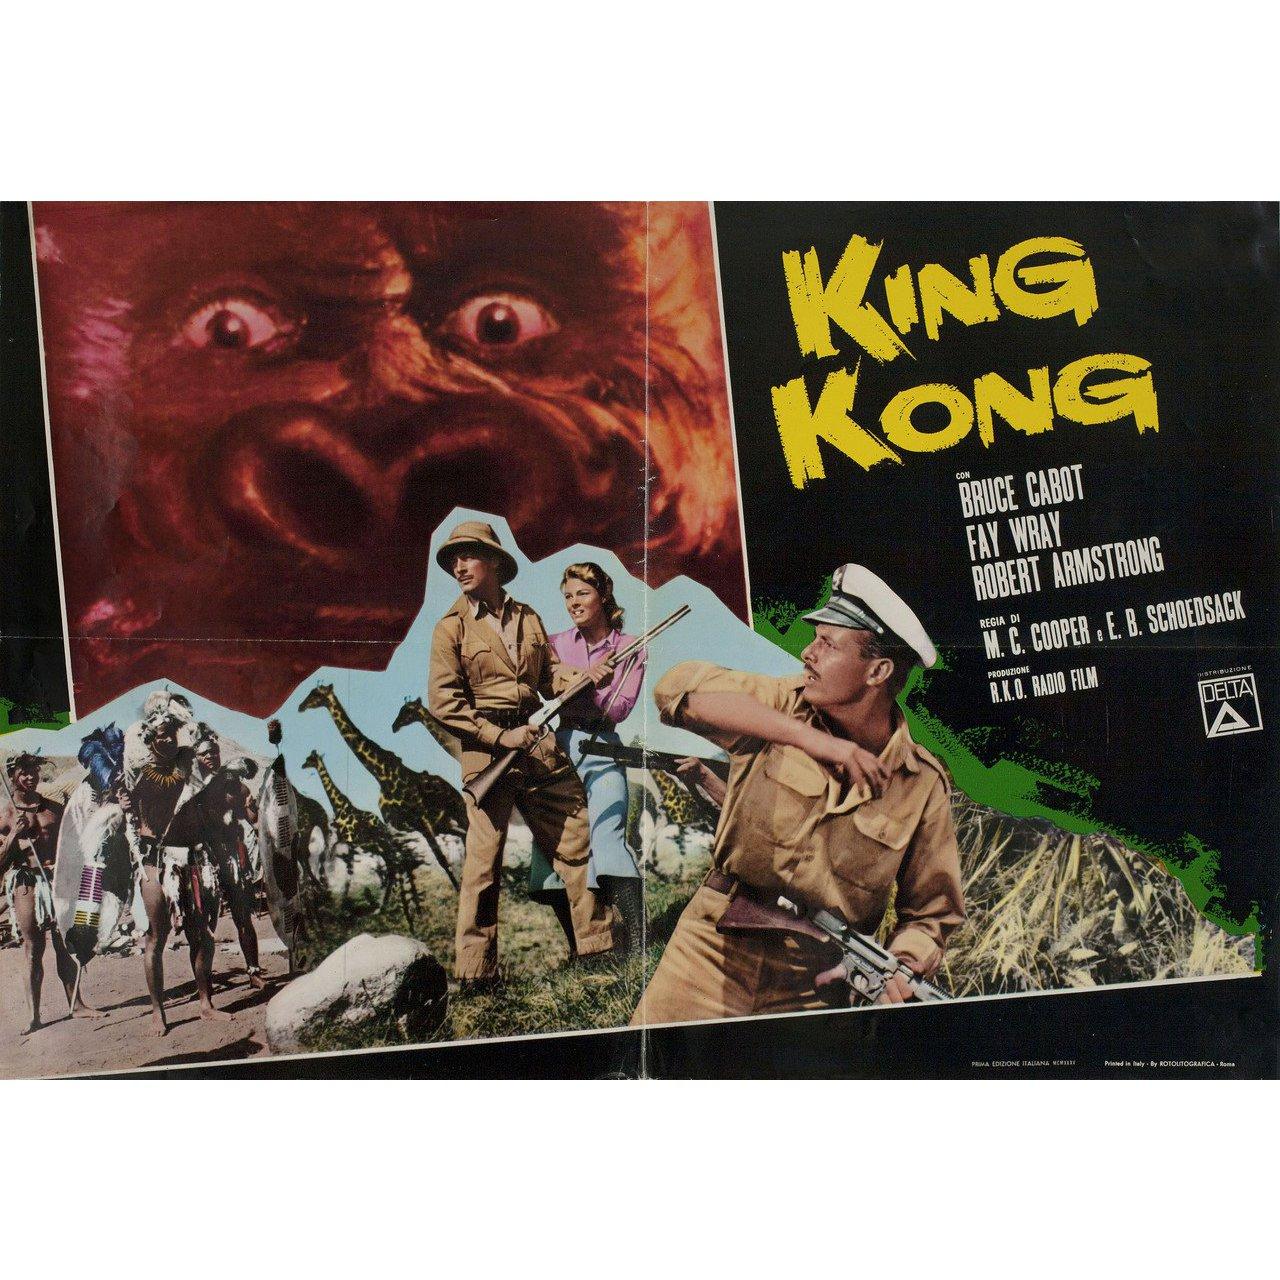 Affiche fotobusta italienne originale rééditée en 1966 pour le film King Kong réalisé en 1933 par Merian C. Cooper / Ernest B. Schoedsack avec Fay Wray / Robert Armstrong / Bruce Cabot / Frank Reicher. Très bon état, plié. De nombreuses affiches